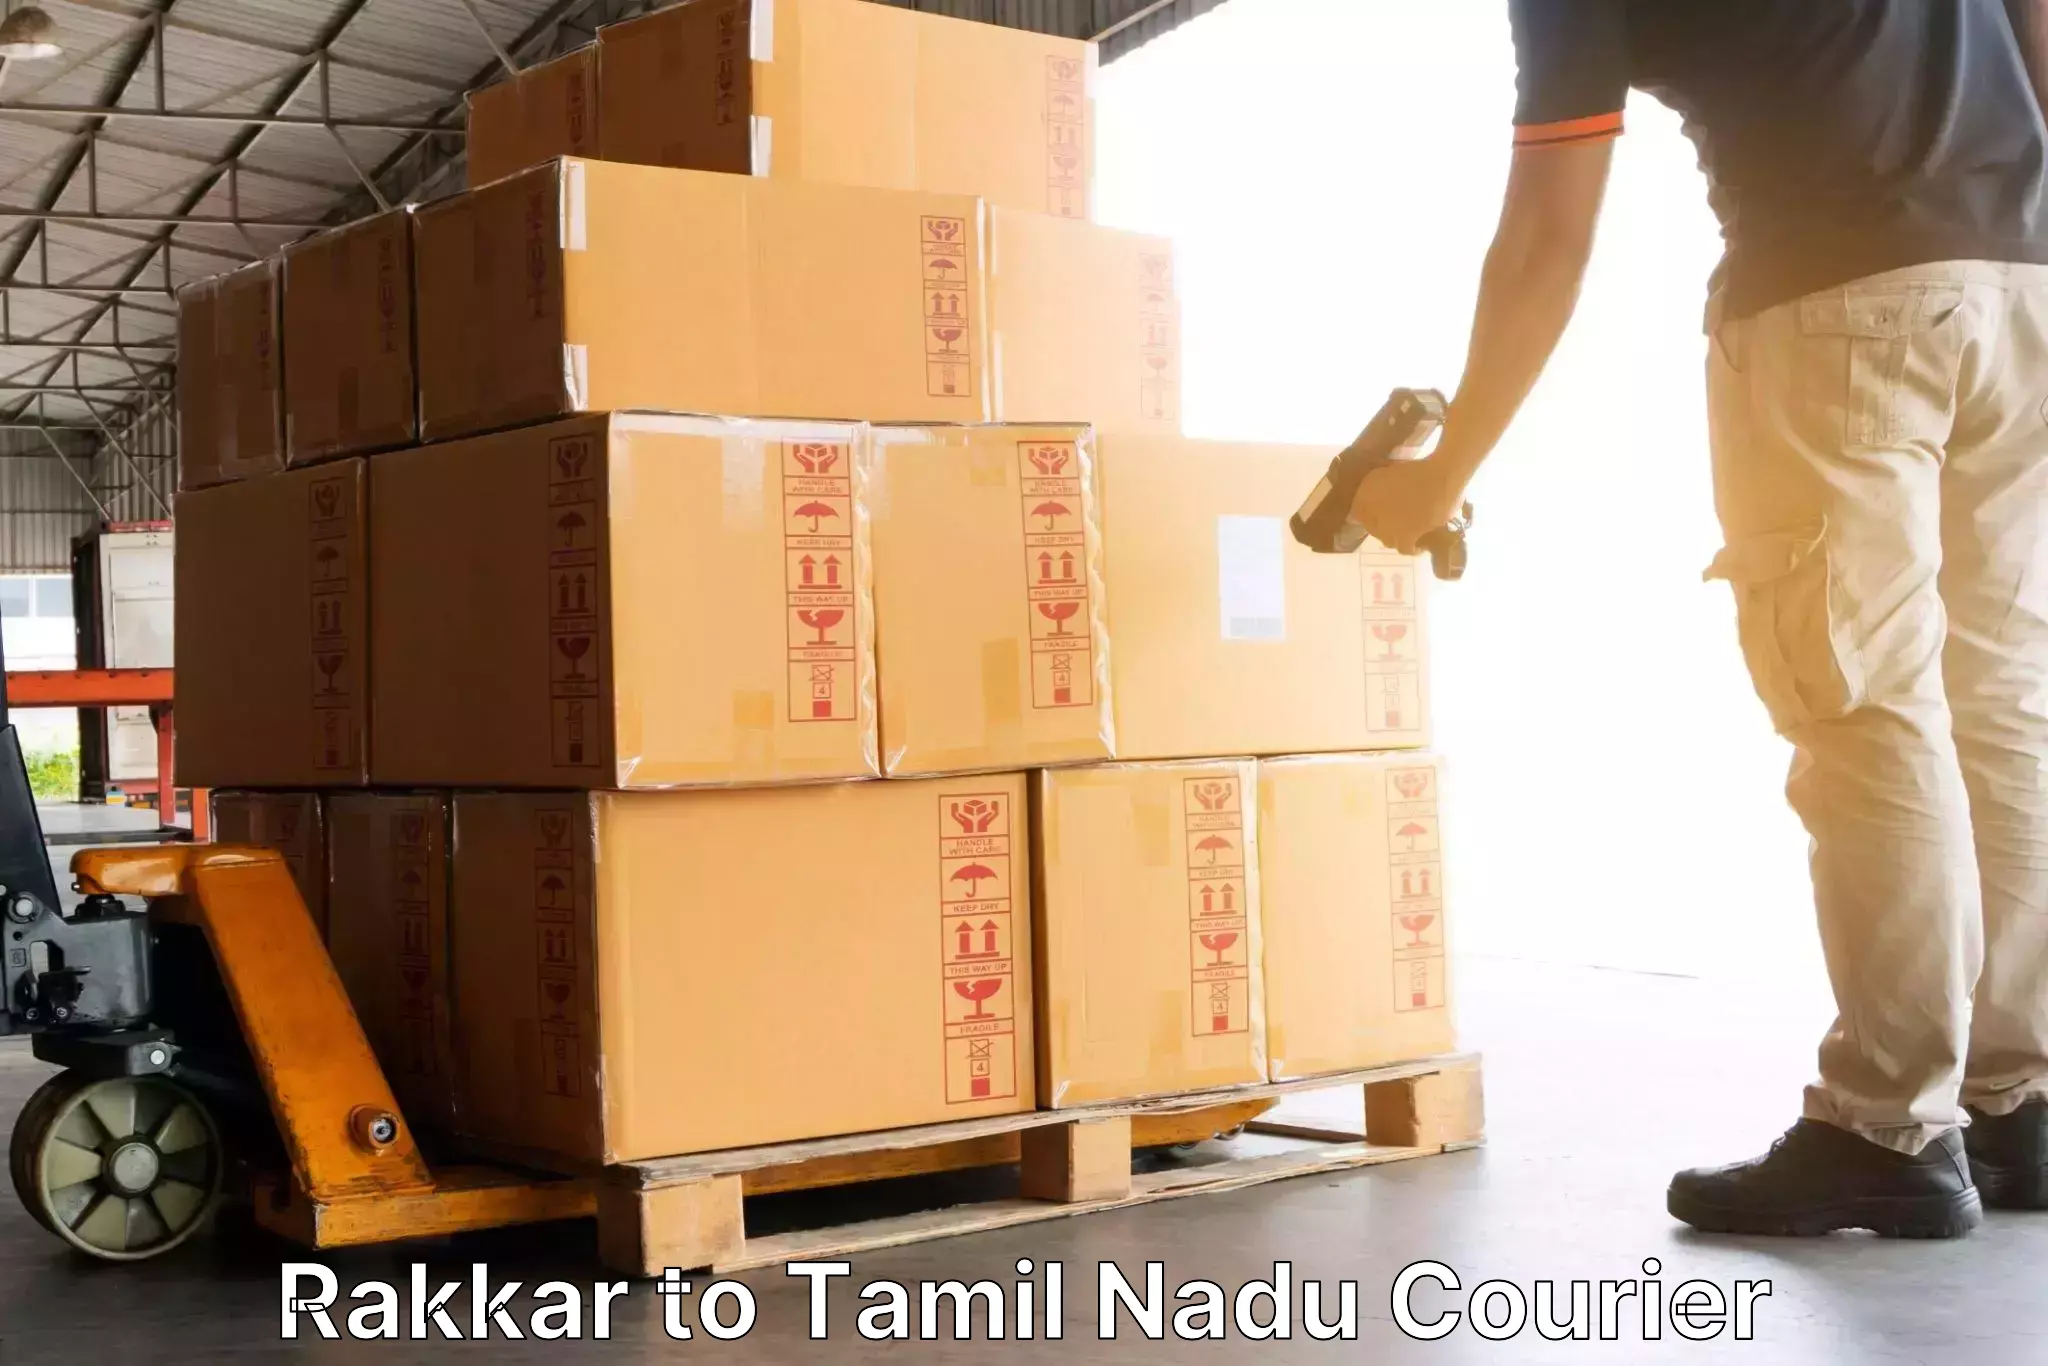 Express courier facilities Rakkar to Palani